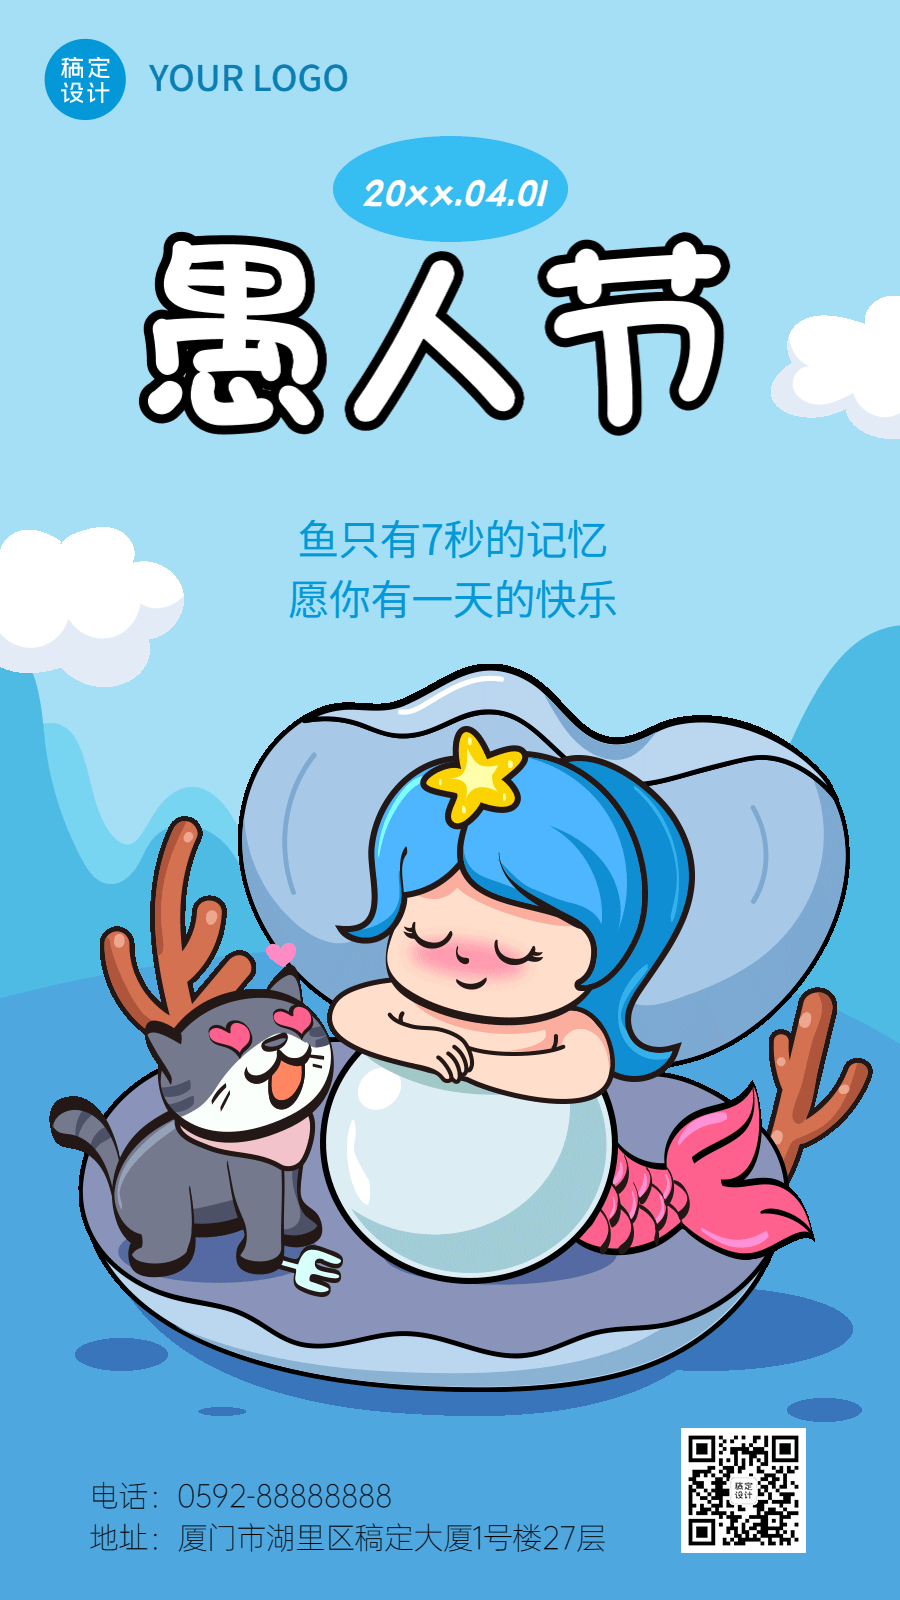 愚人节节日祝福插画动态手机海报预览效果